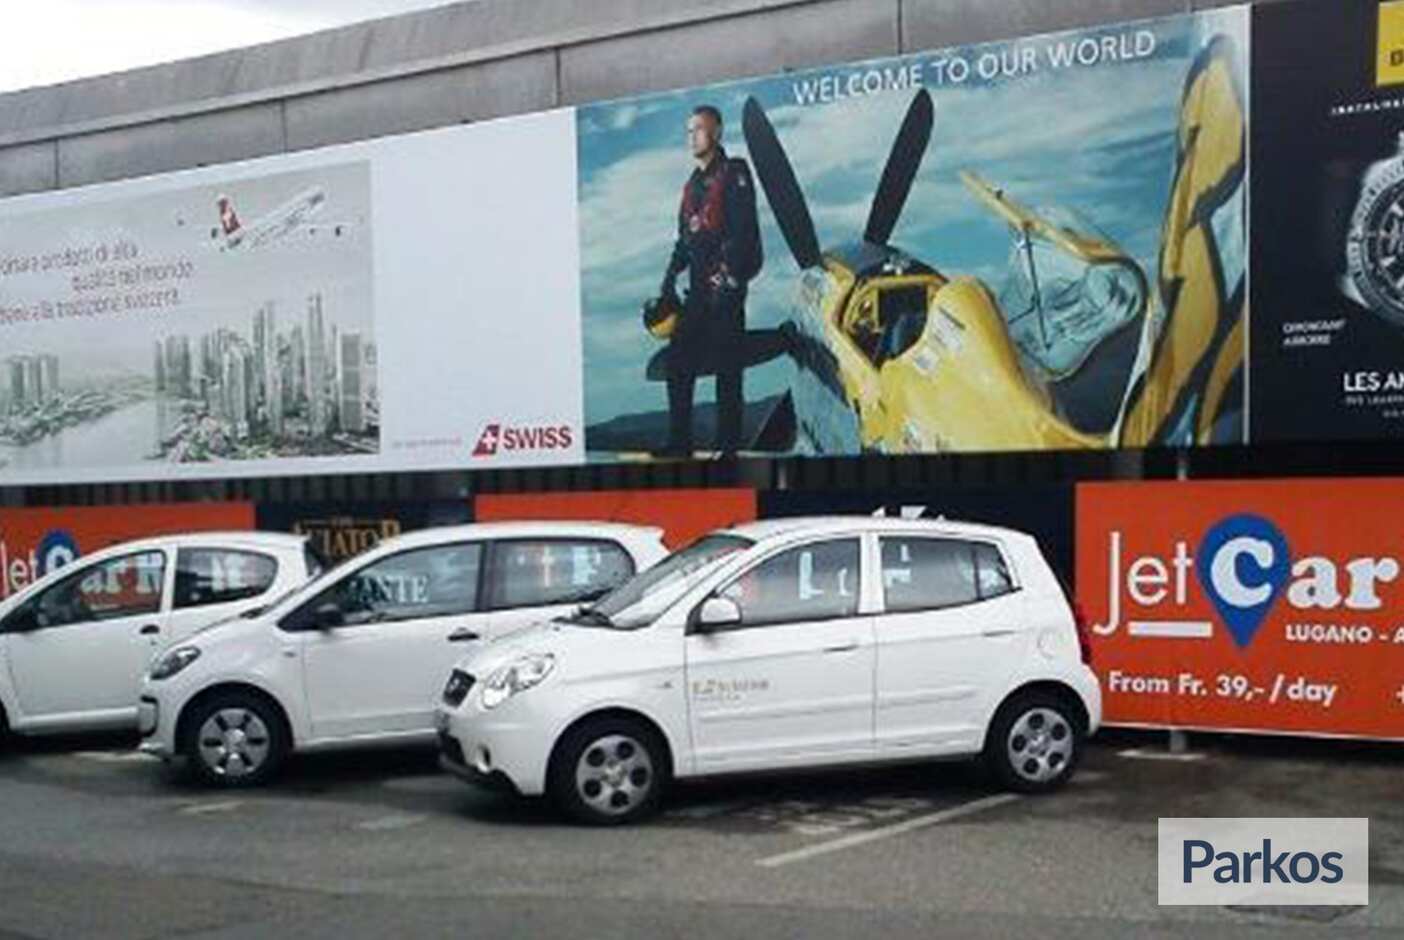 JetCarPark - Parkings de l'aéroport de Lugano - picture 1